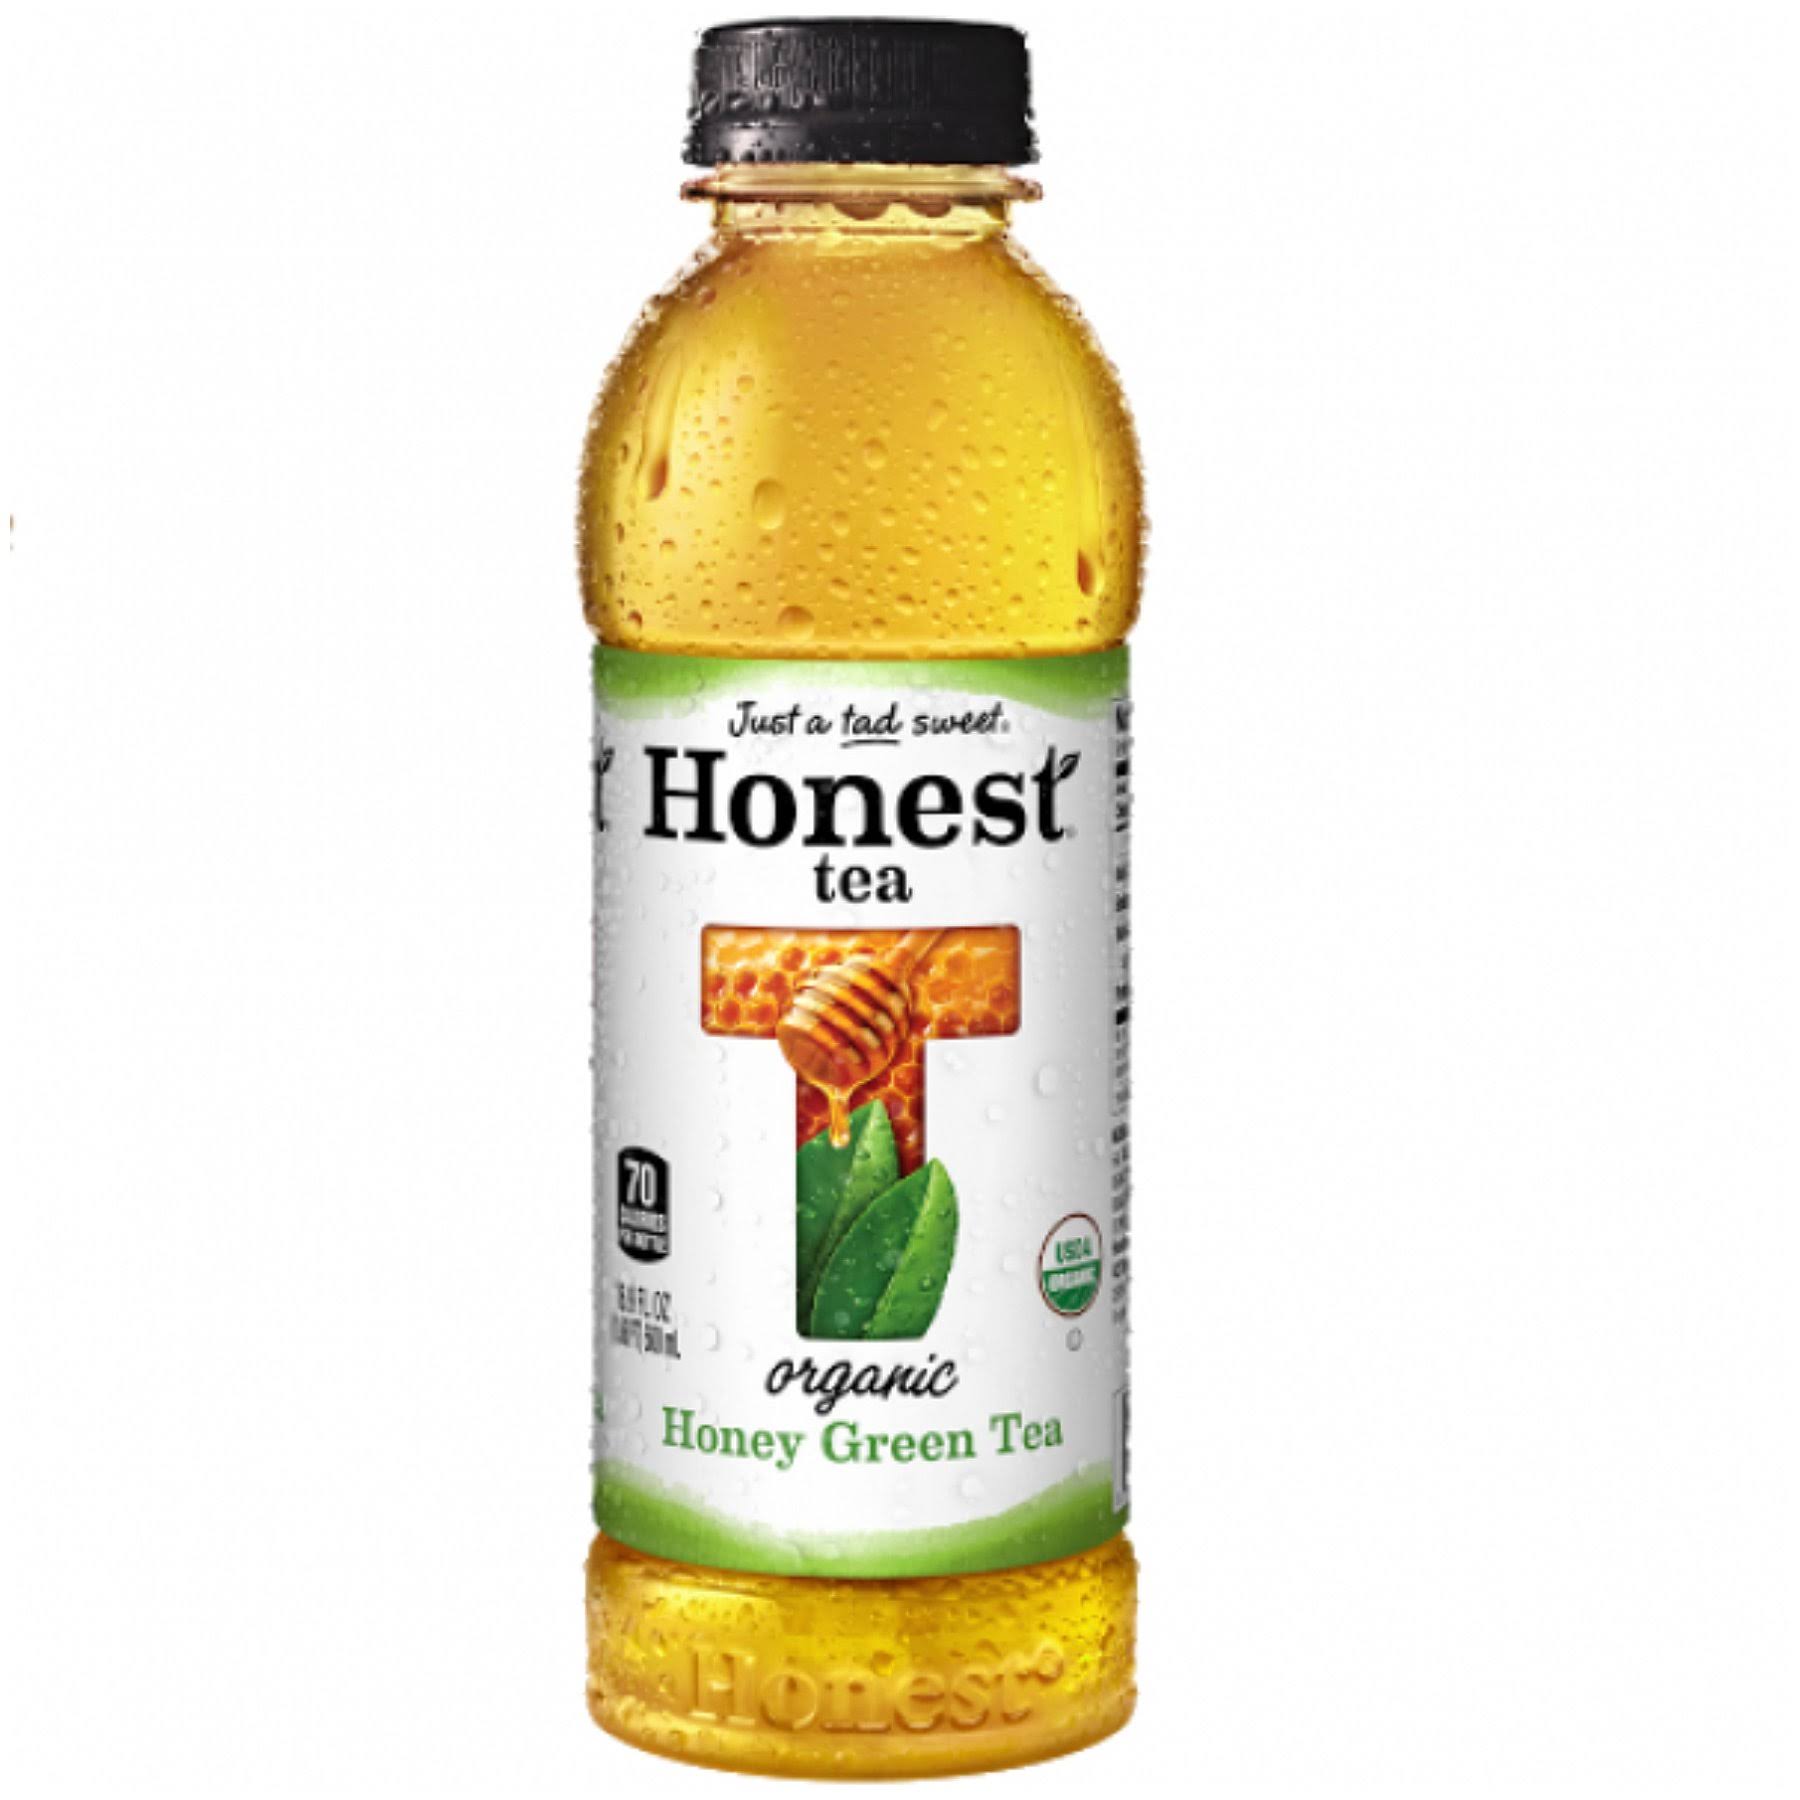 Honest Honey Green Tea - 16.9 fl oz bottle